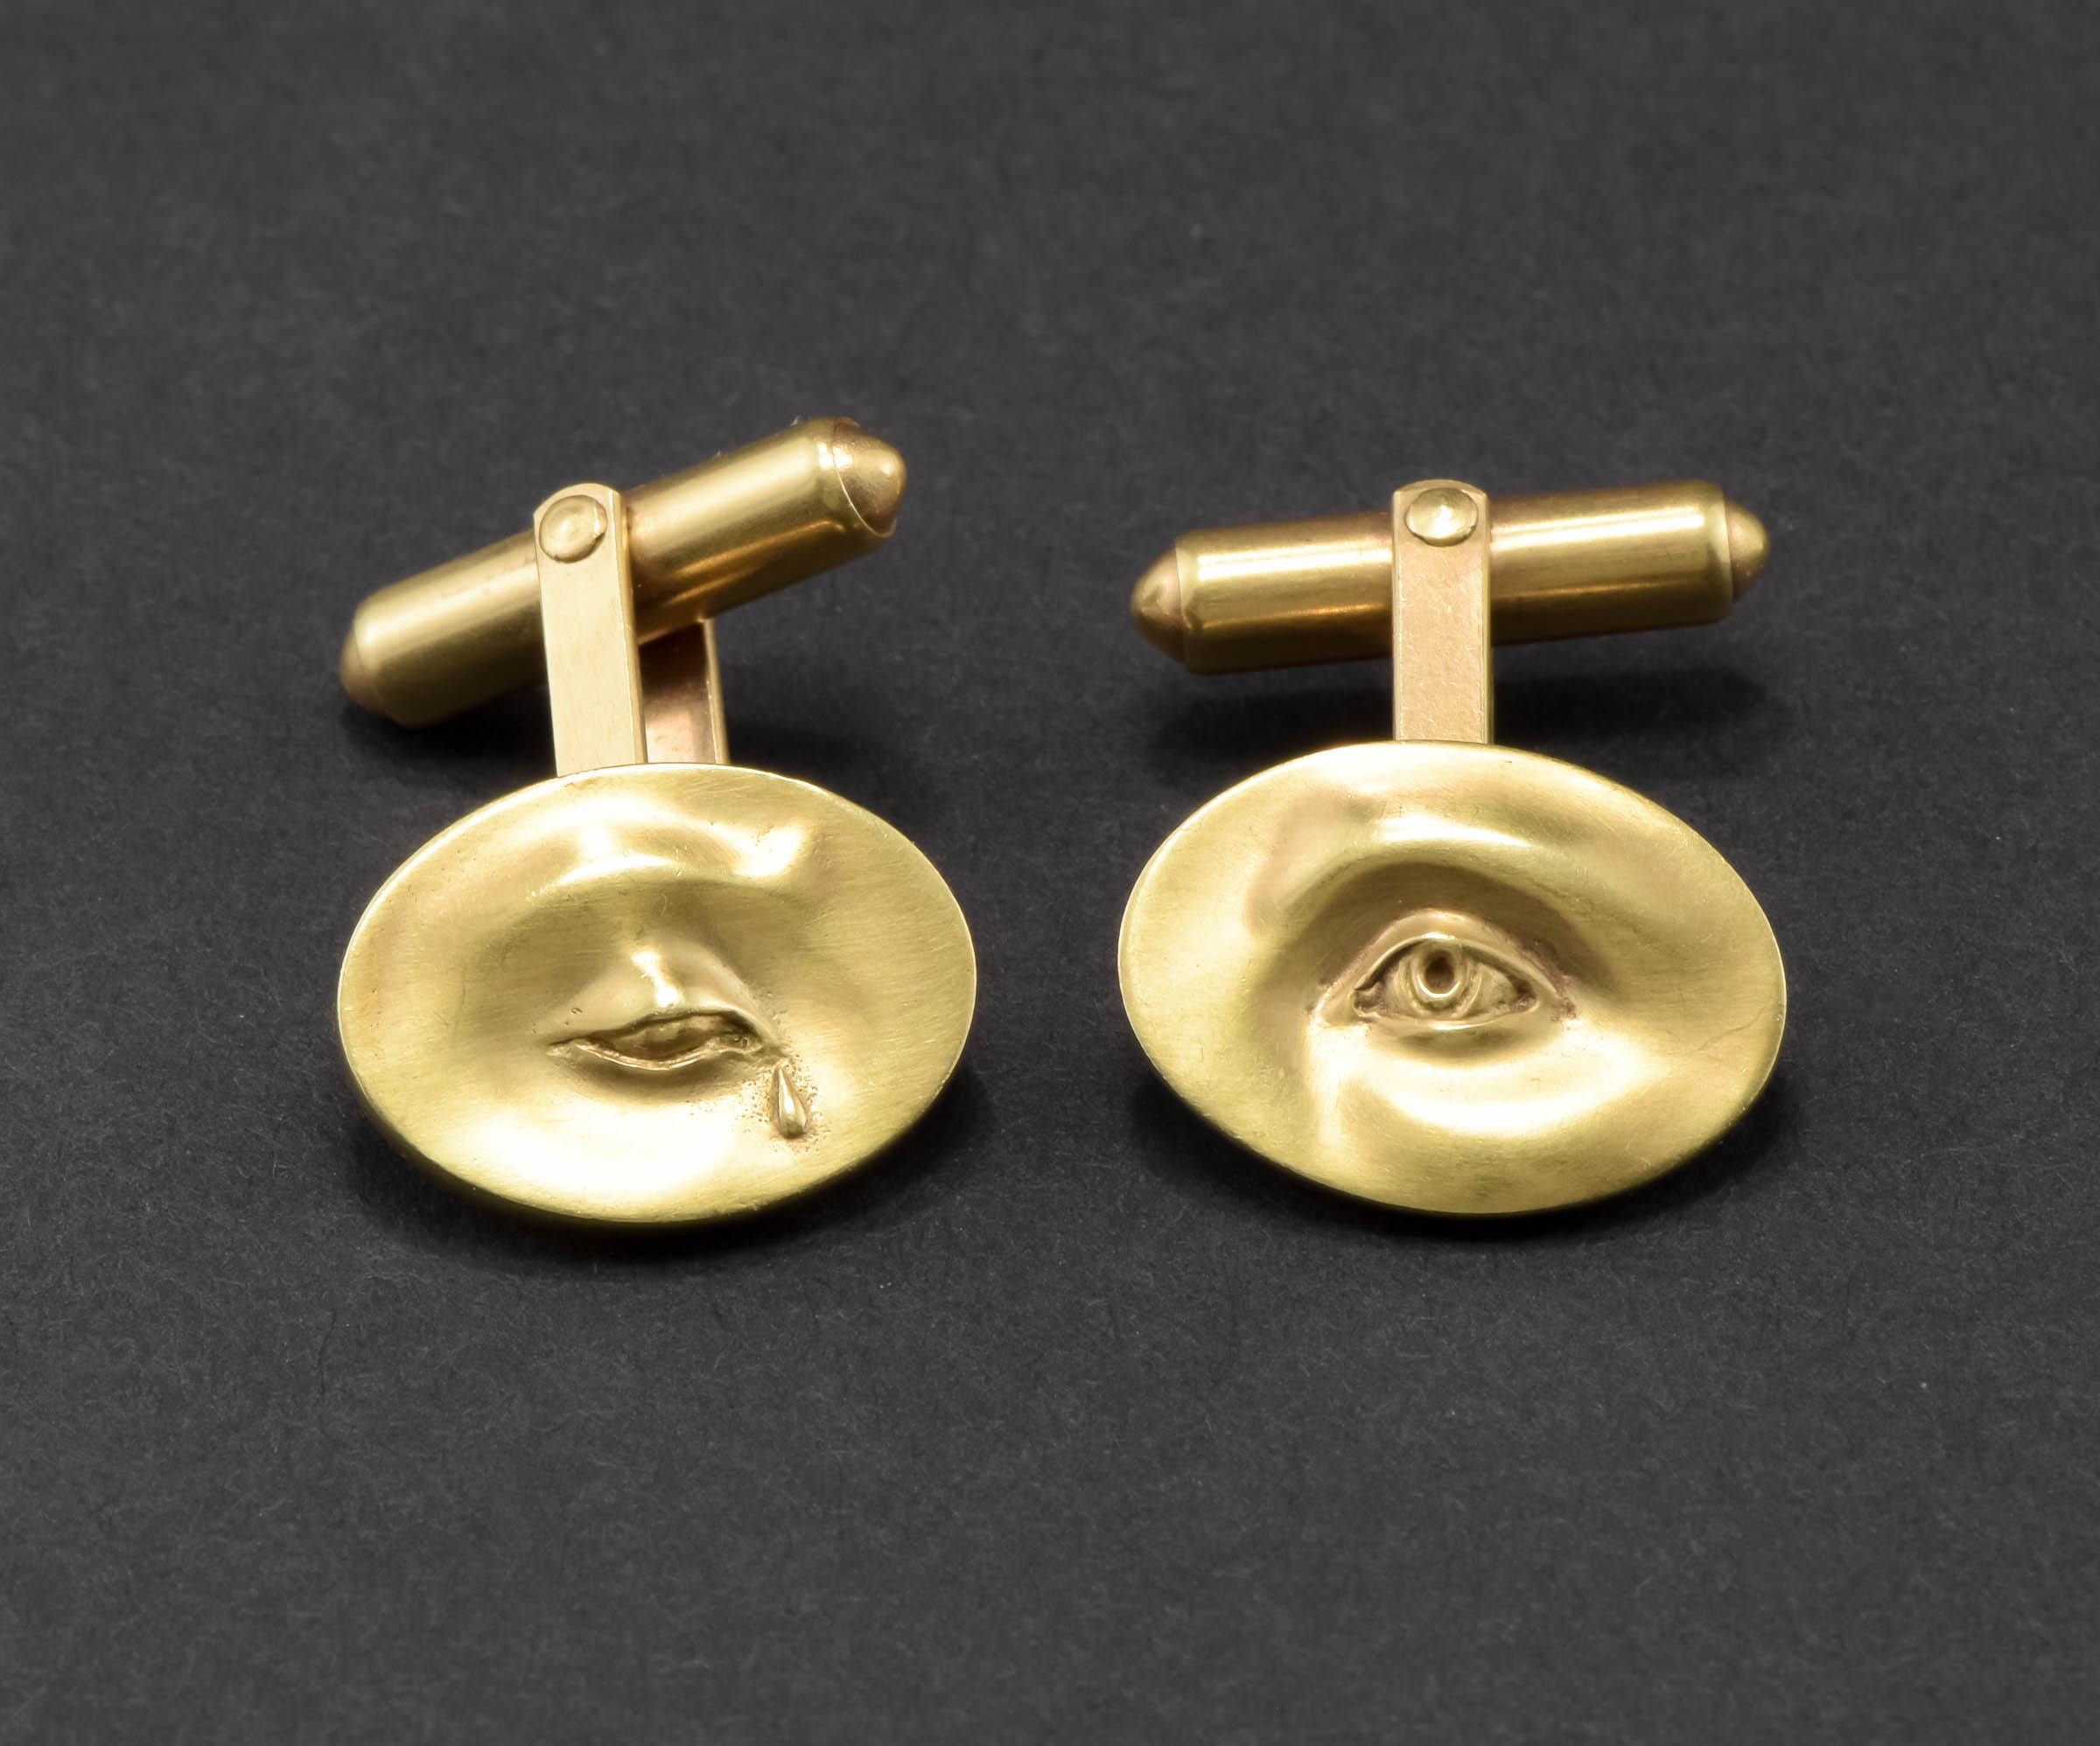 Dieses wunderschöne Paar Manschettenknöpfe aus 14-karätigem Gold wurde von der talentierten amerikanischen Juwelierin Gabriella Kiss angefertigt und ist unglaublich schwer zu finden.  Sie sind Teil ihrer 